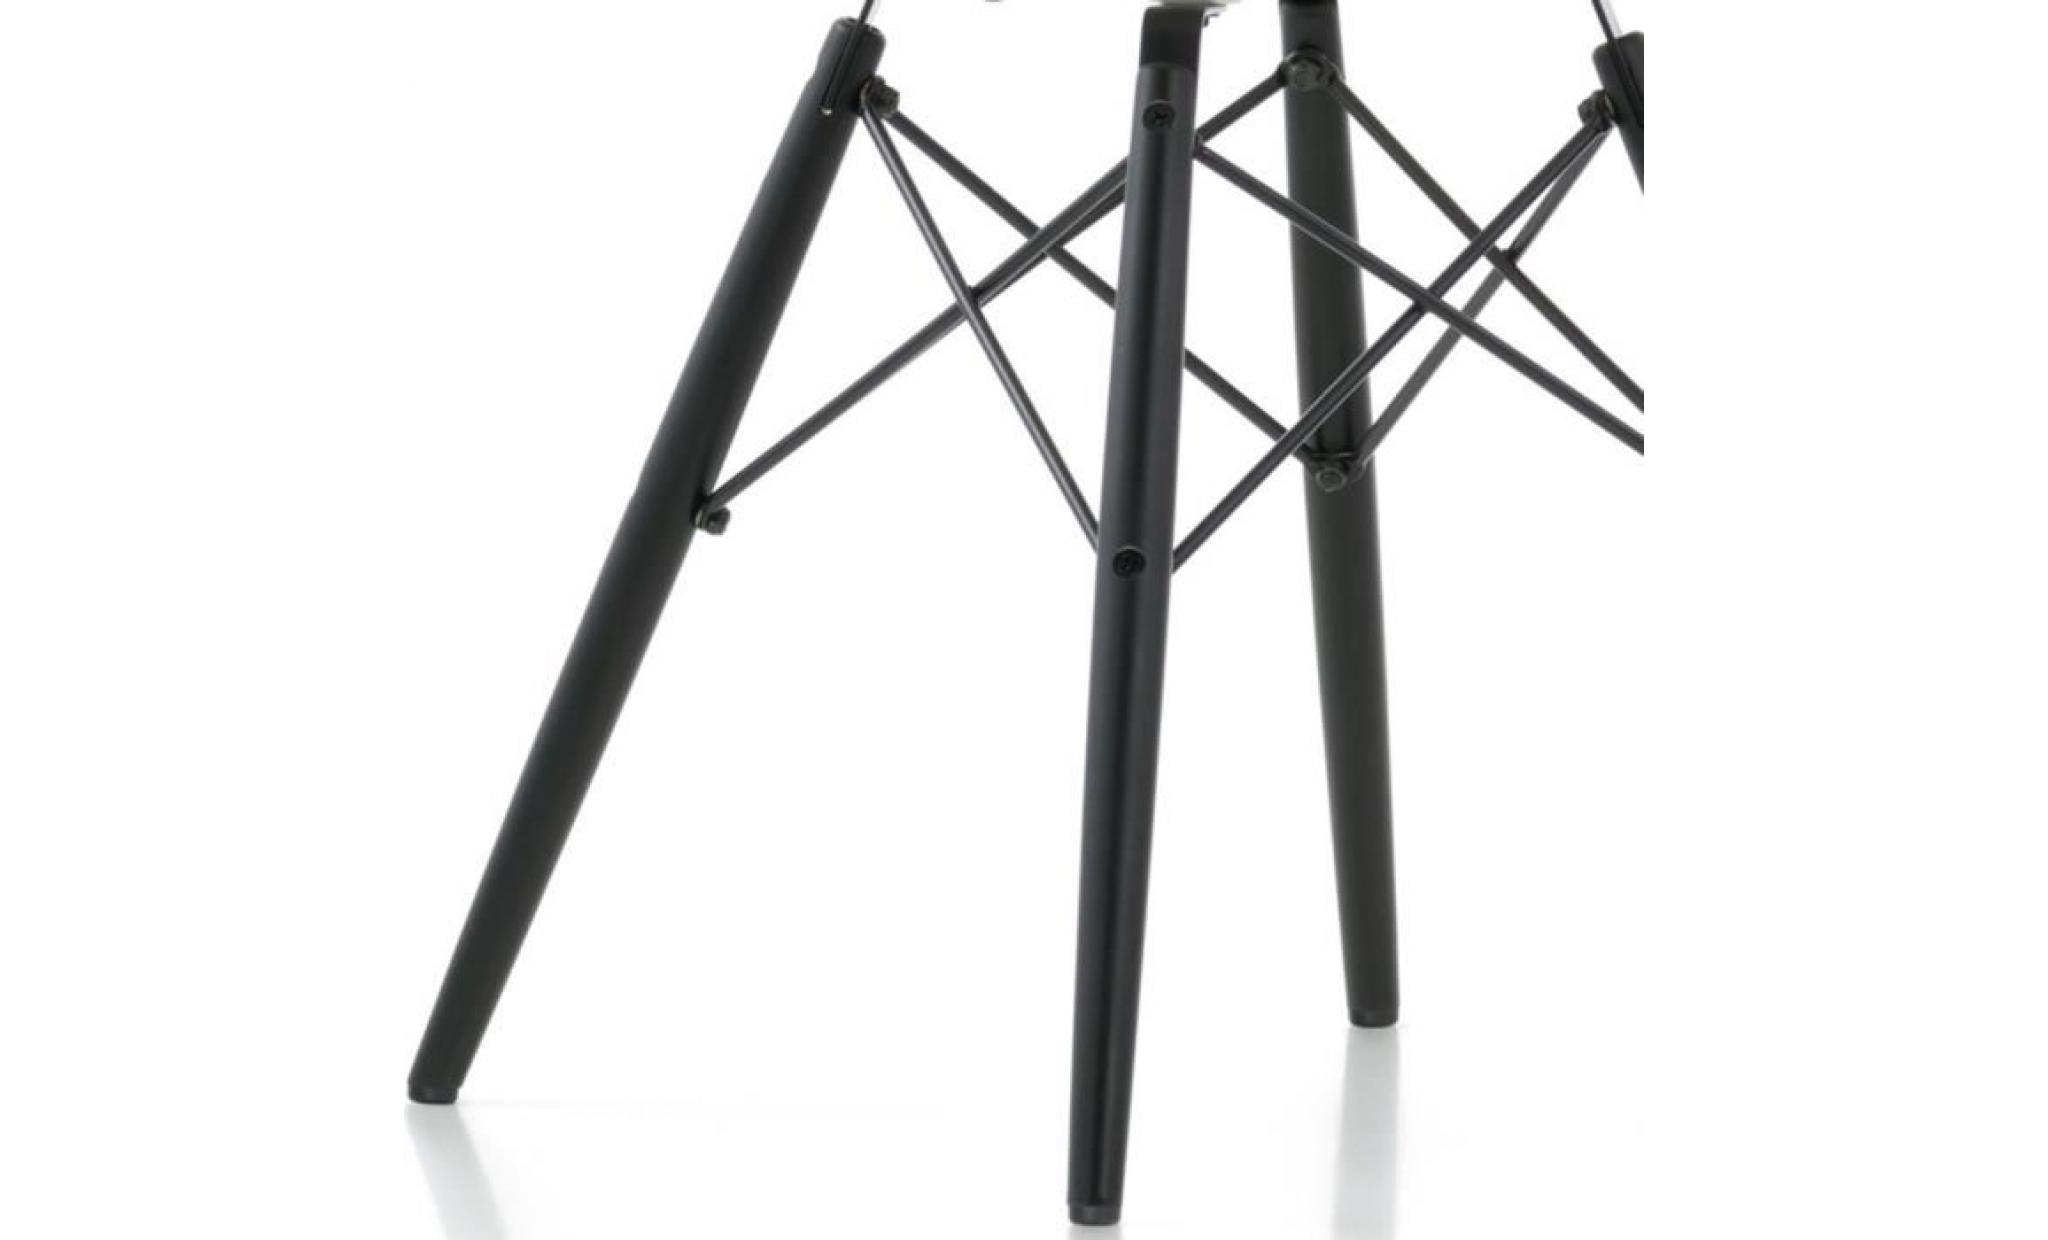 1 x fauteuil design  scandinave haut. 48 cm marron pieds: bois vernis noyer decopresto dp dawd48 br 1 pas cher